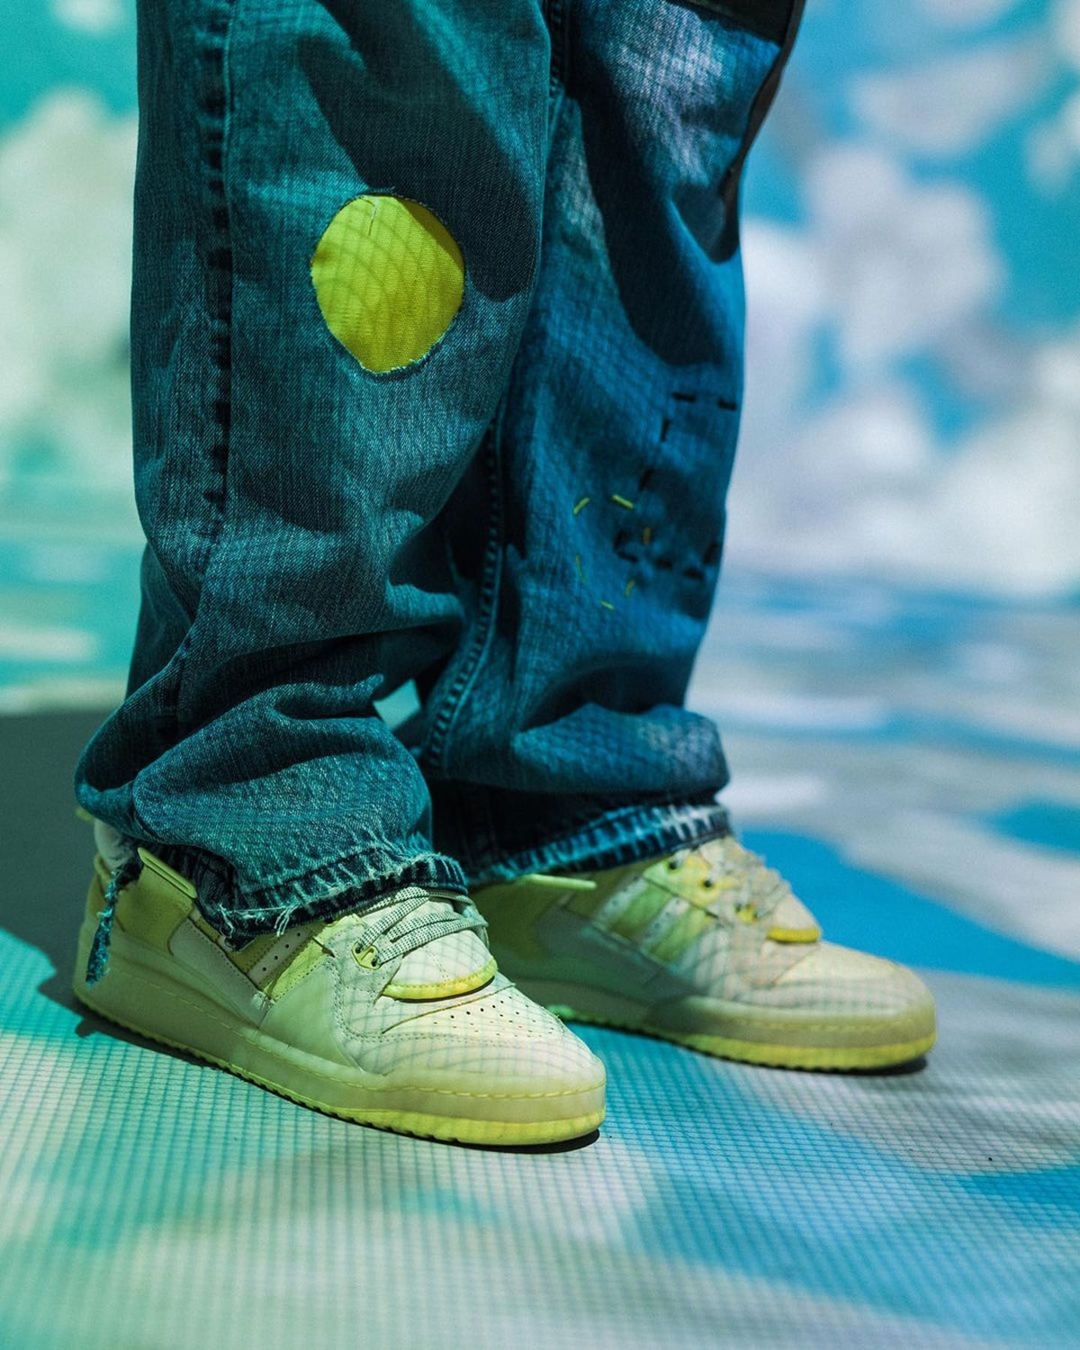 2021年 発売予定！Bad Bunny × adidas Originals FORUM BUCKLE LOW “Yellow” (バッド・バニー アディダス オリジナルス フォーラム バックル ロー “イエロー”) [GW5021]